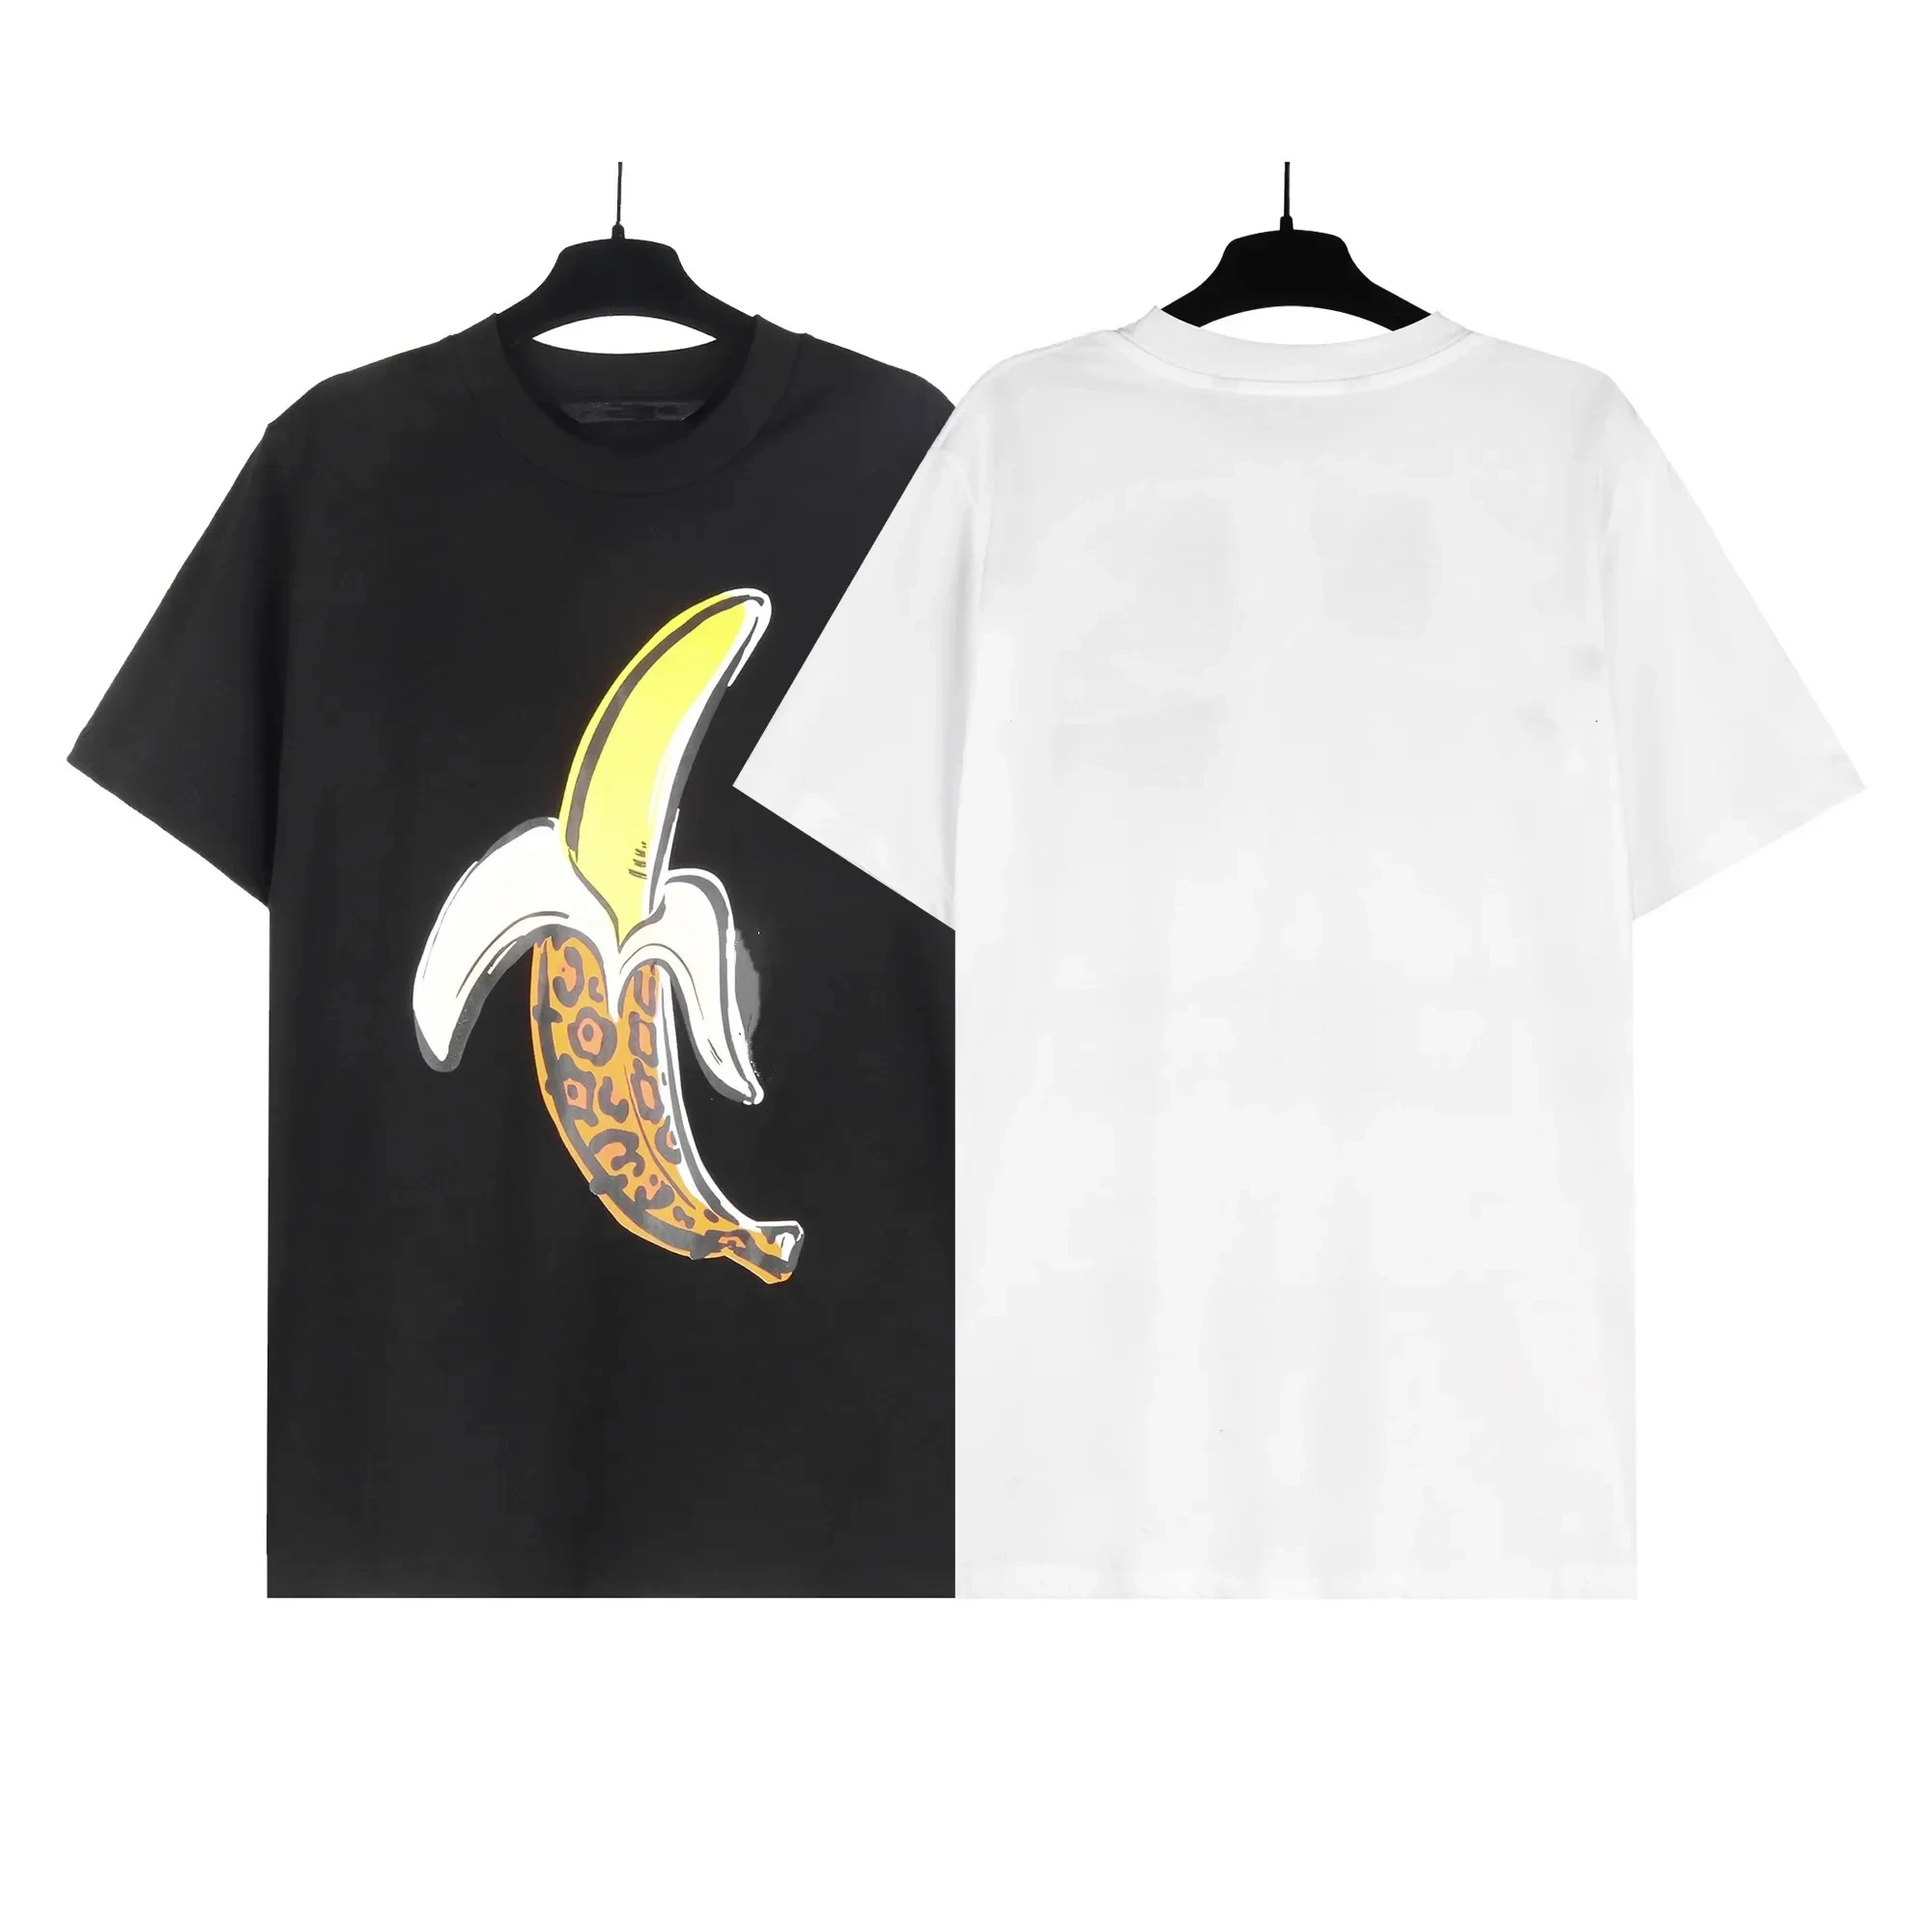 Футболки Angel для мужчин и женщин, футболки с короткими рукавами, футболки оверсайз, банановые молодежные пары, подарок Изображение 0